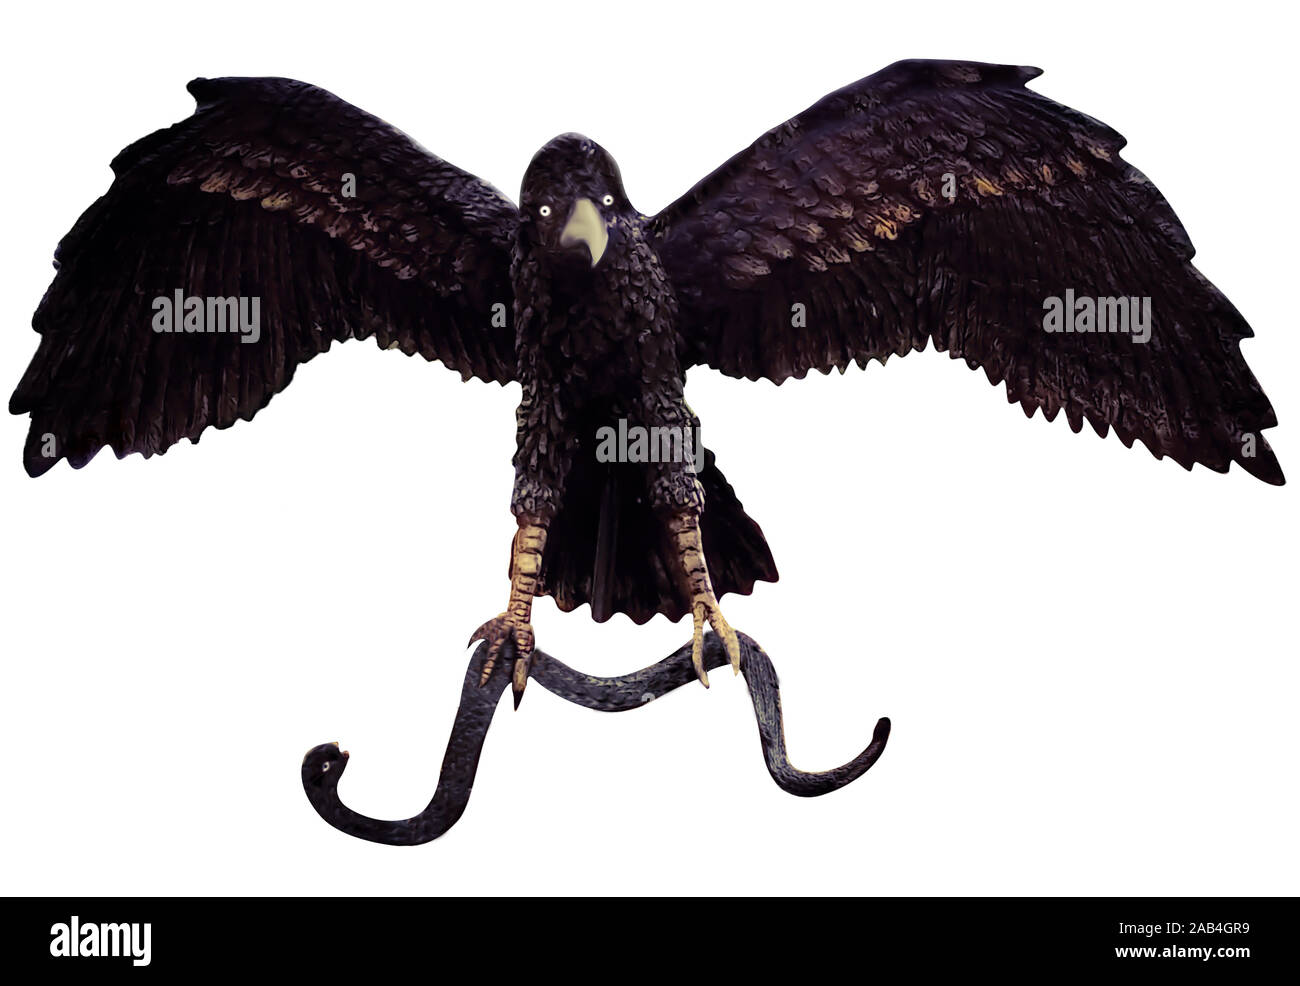 Einem Fliegenden Adler Und Schlange In Seine Krallen Stockfotografie Alamy